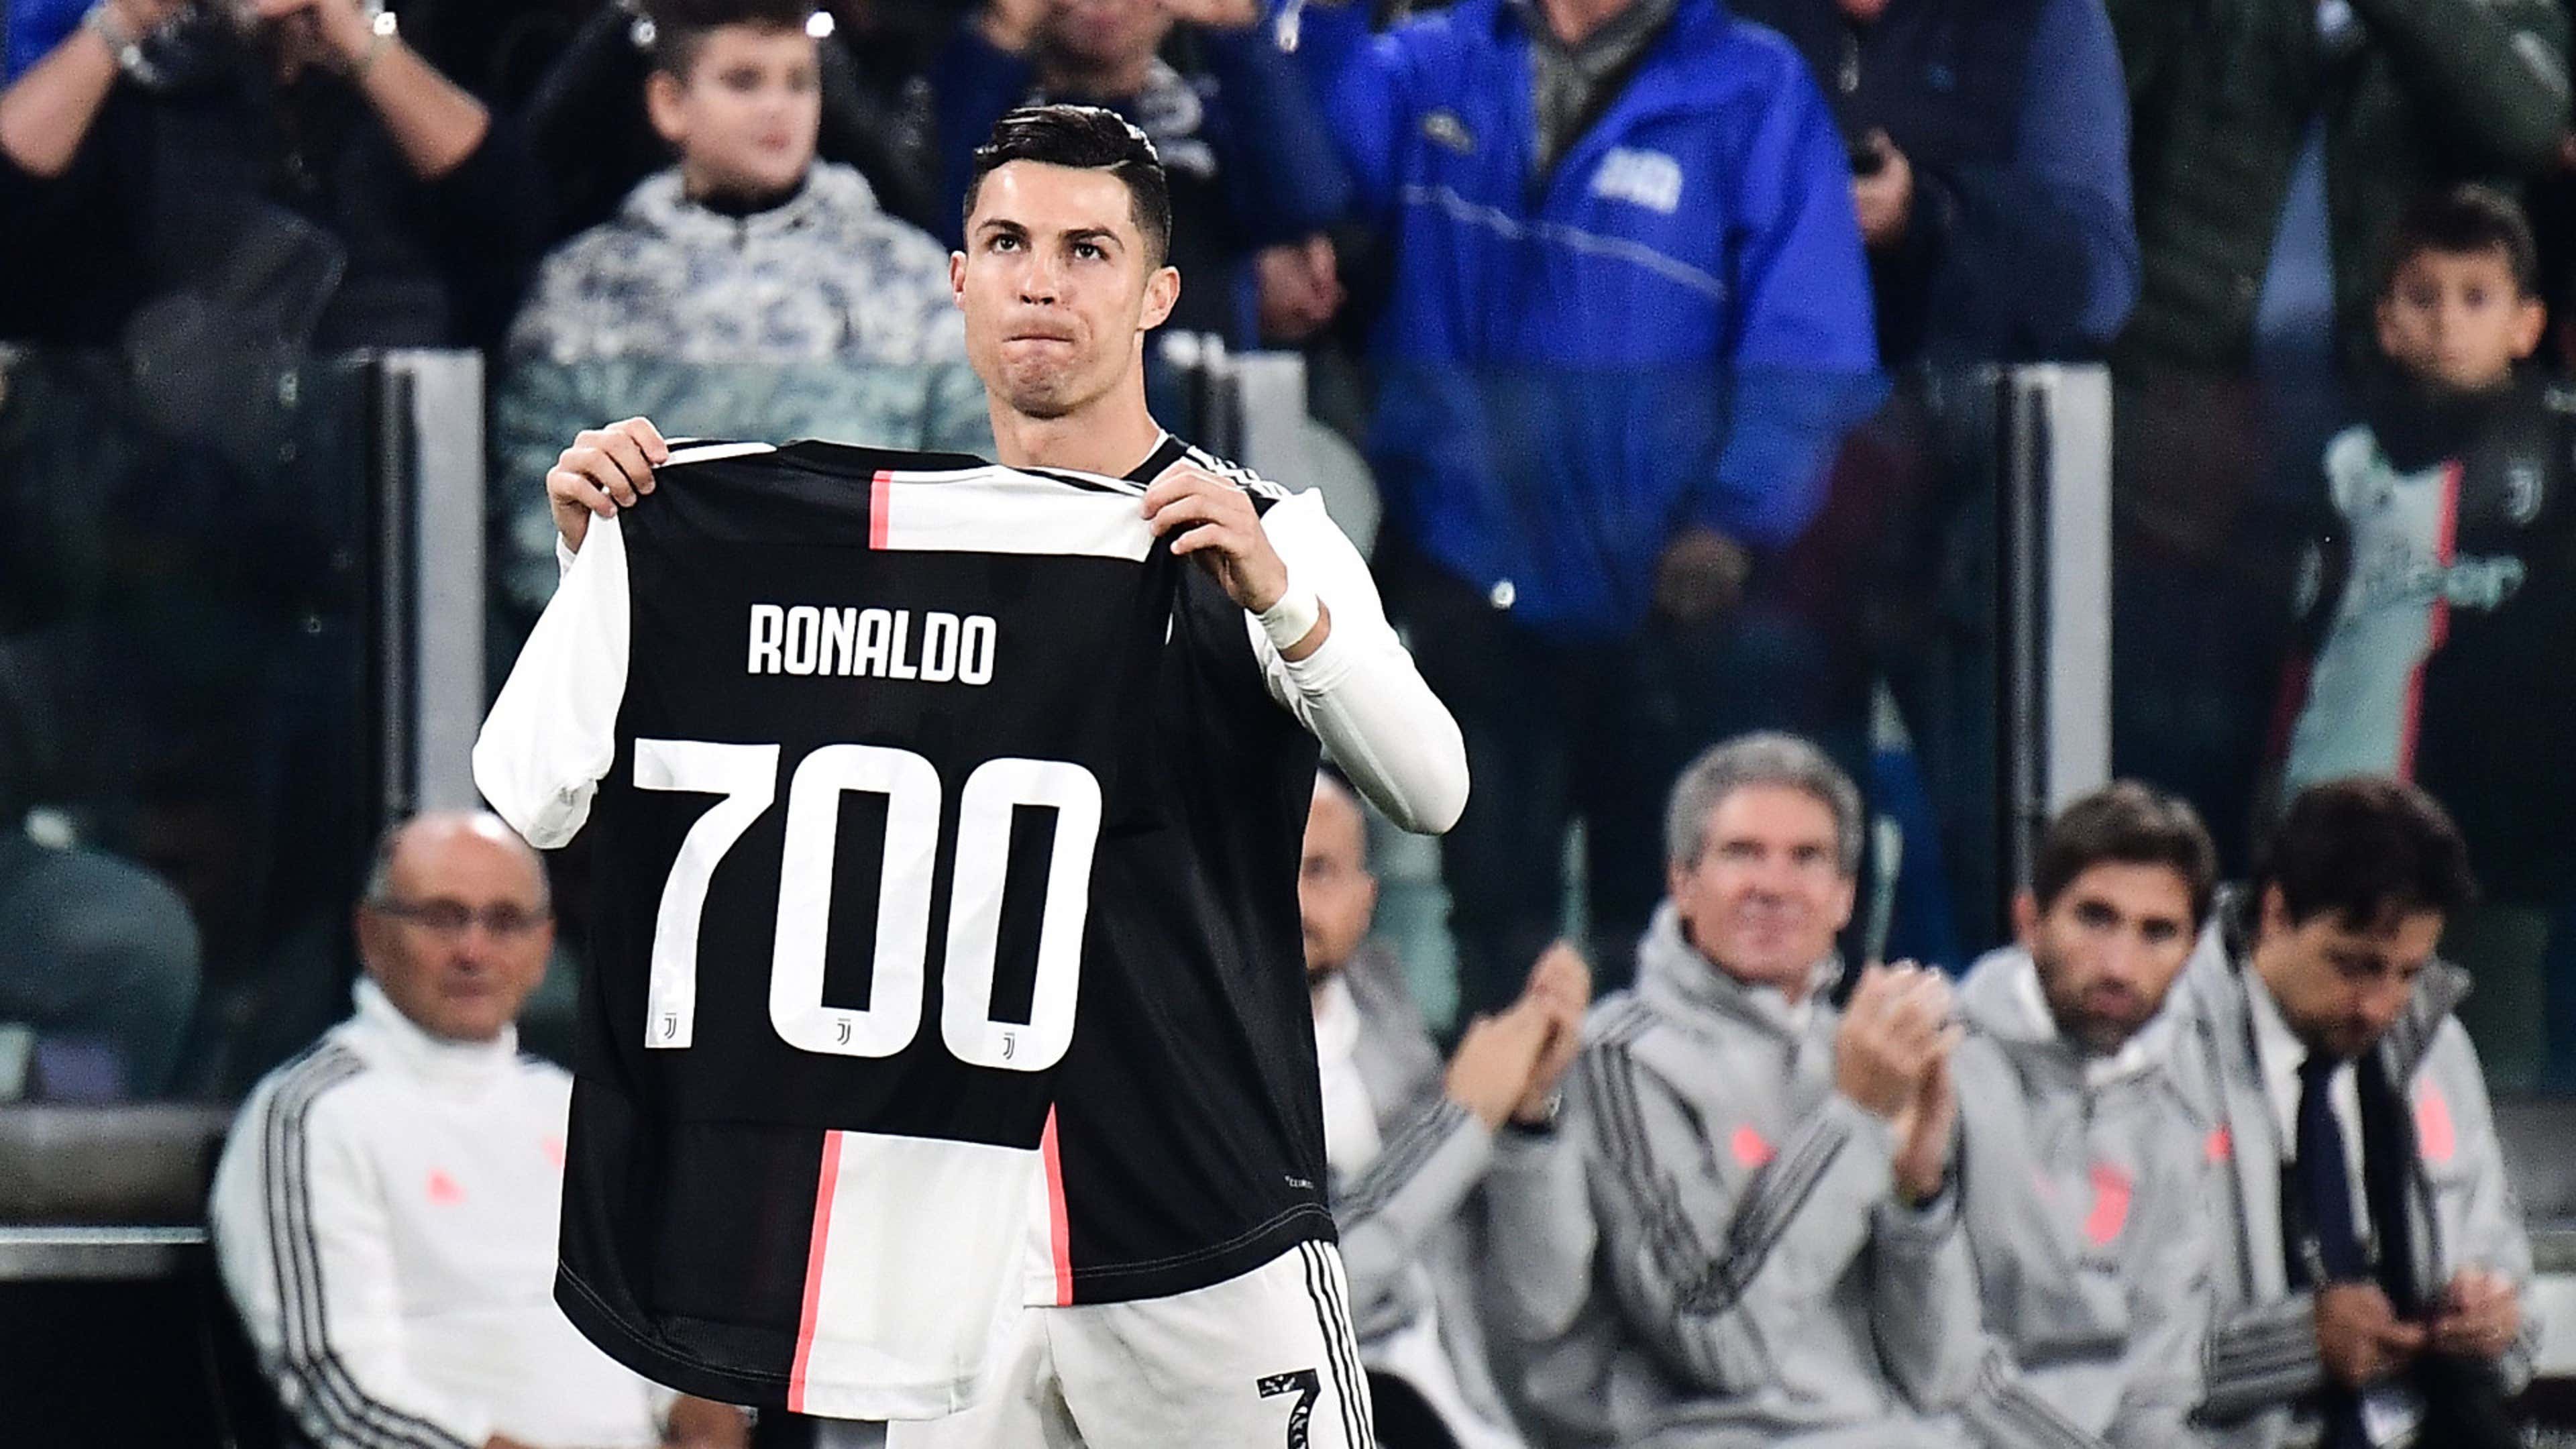 La Juventus tributa Ronaldo: maglia col '700' per celebrare il record